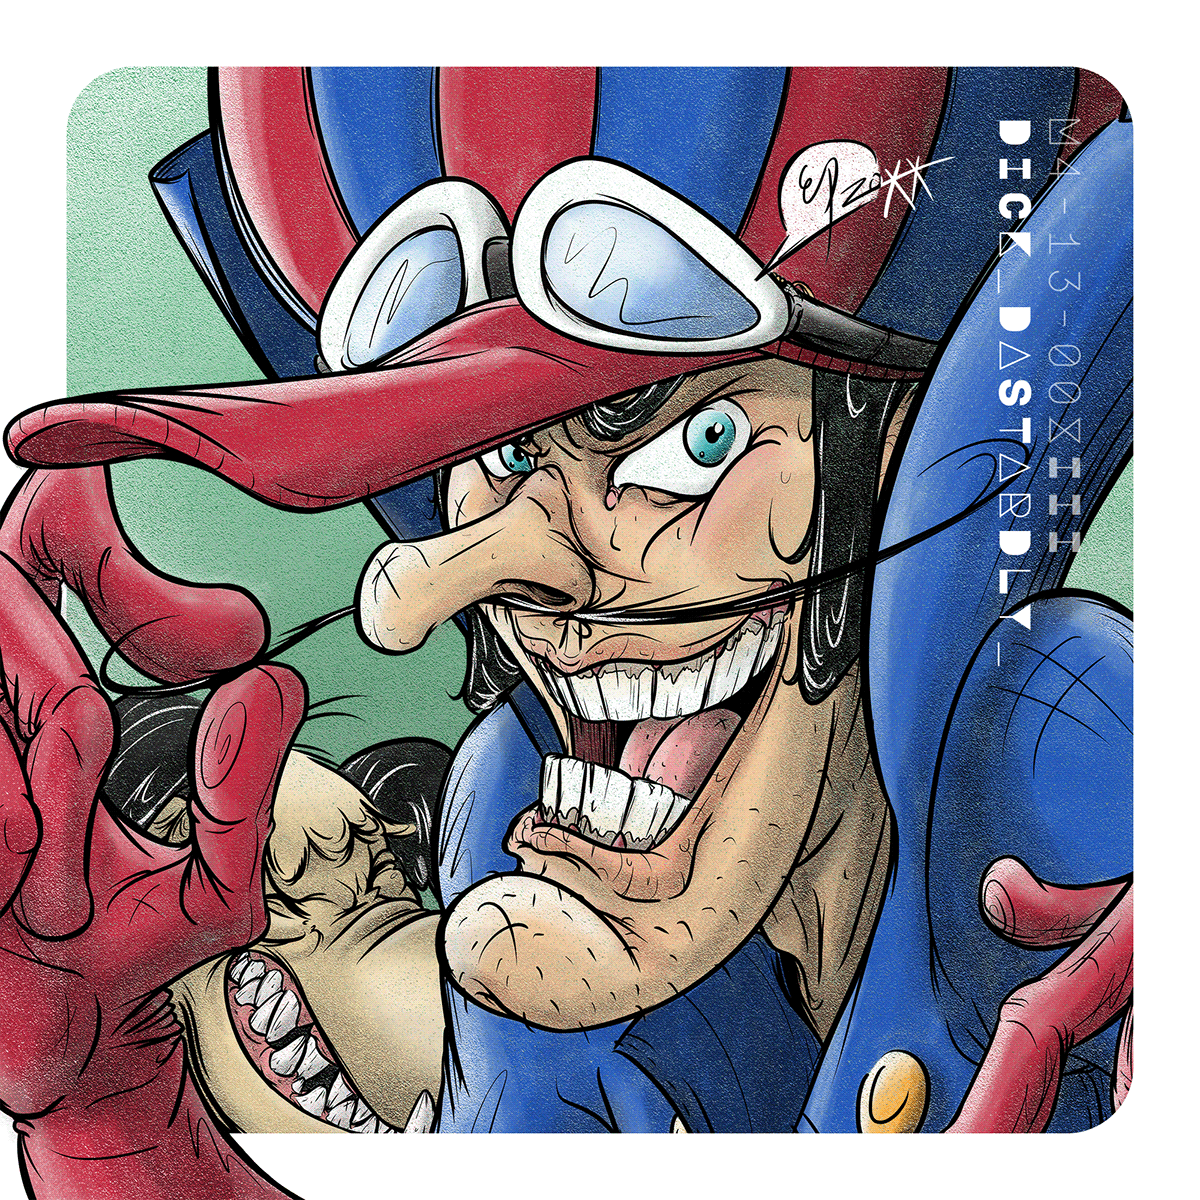 cartoon Character dick dastardly digital illustration fanart Hanna-Barbera Movember mustache muttley villain